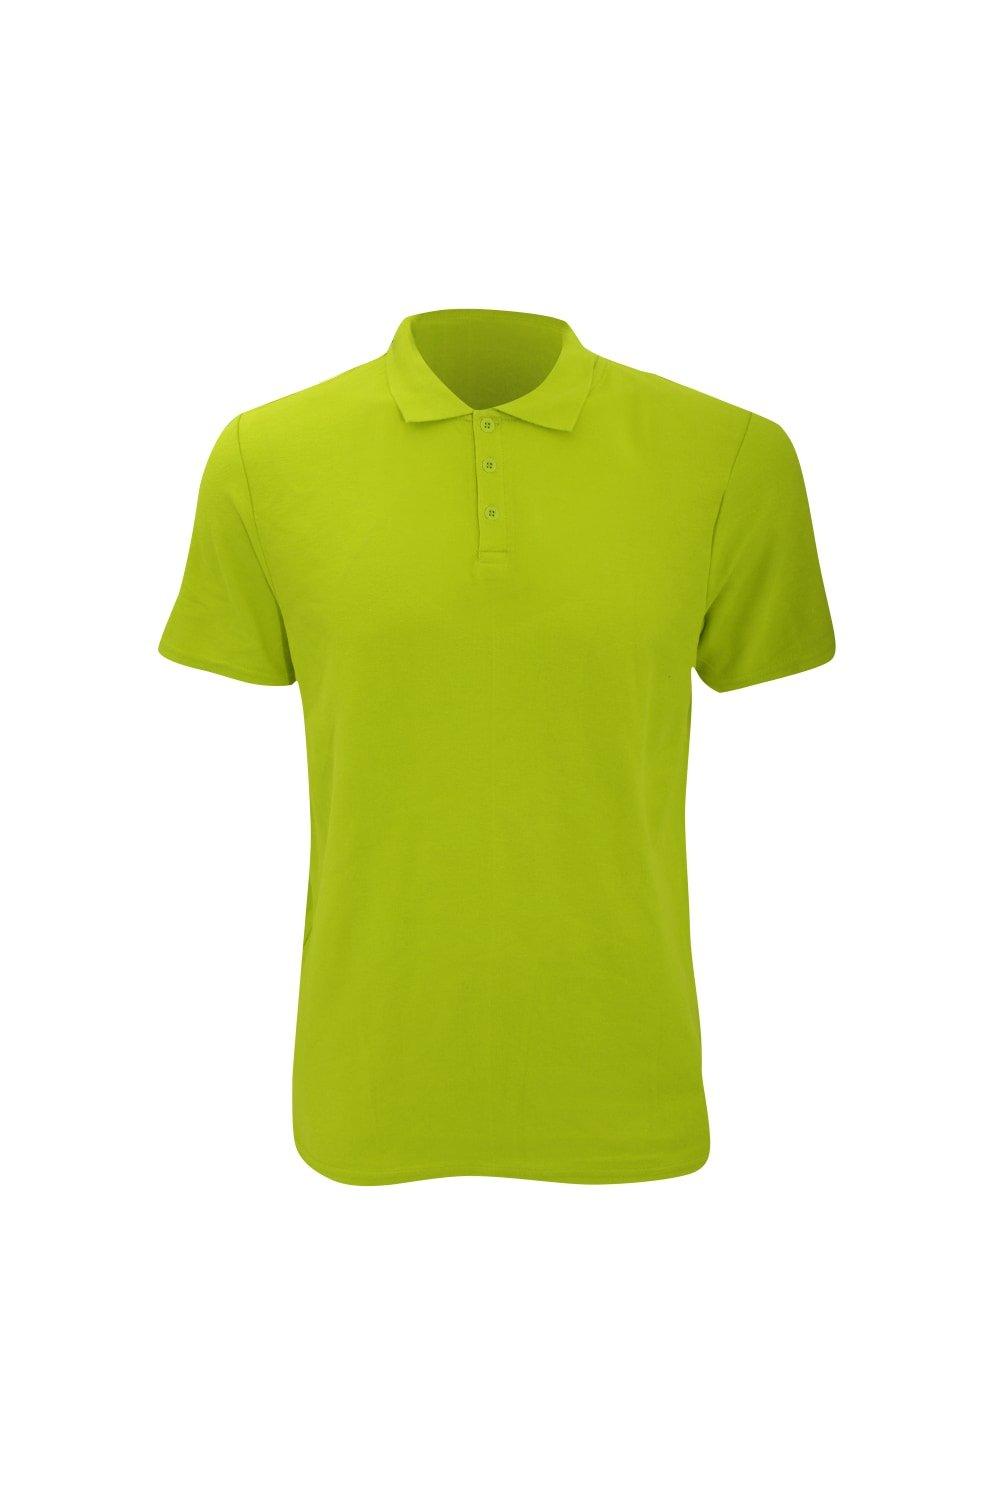 Модная простая рубашка-поло с двойным пике (210 г/м) Anvil, зеленый